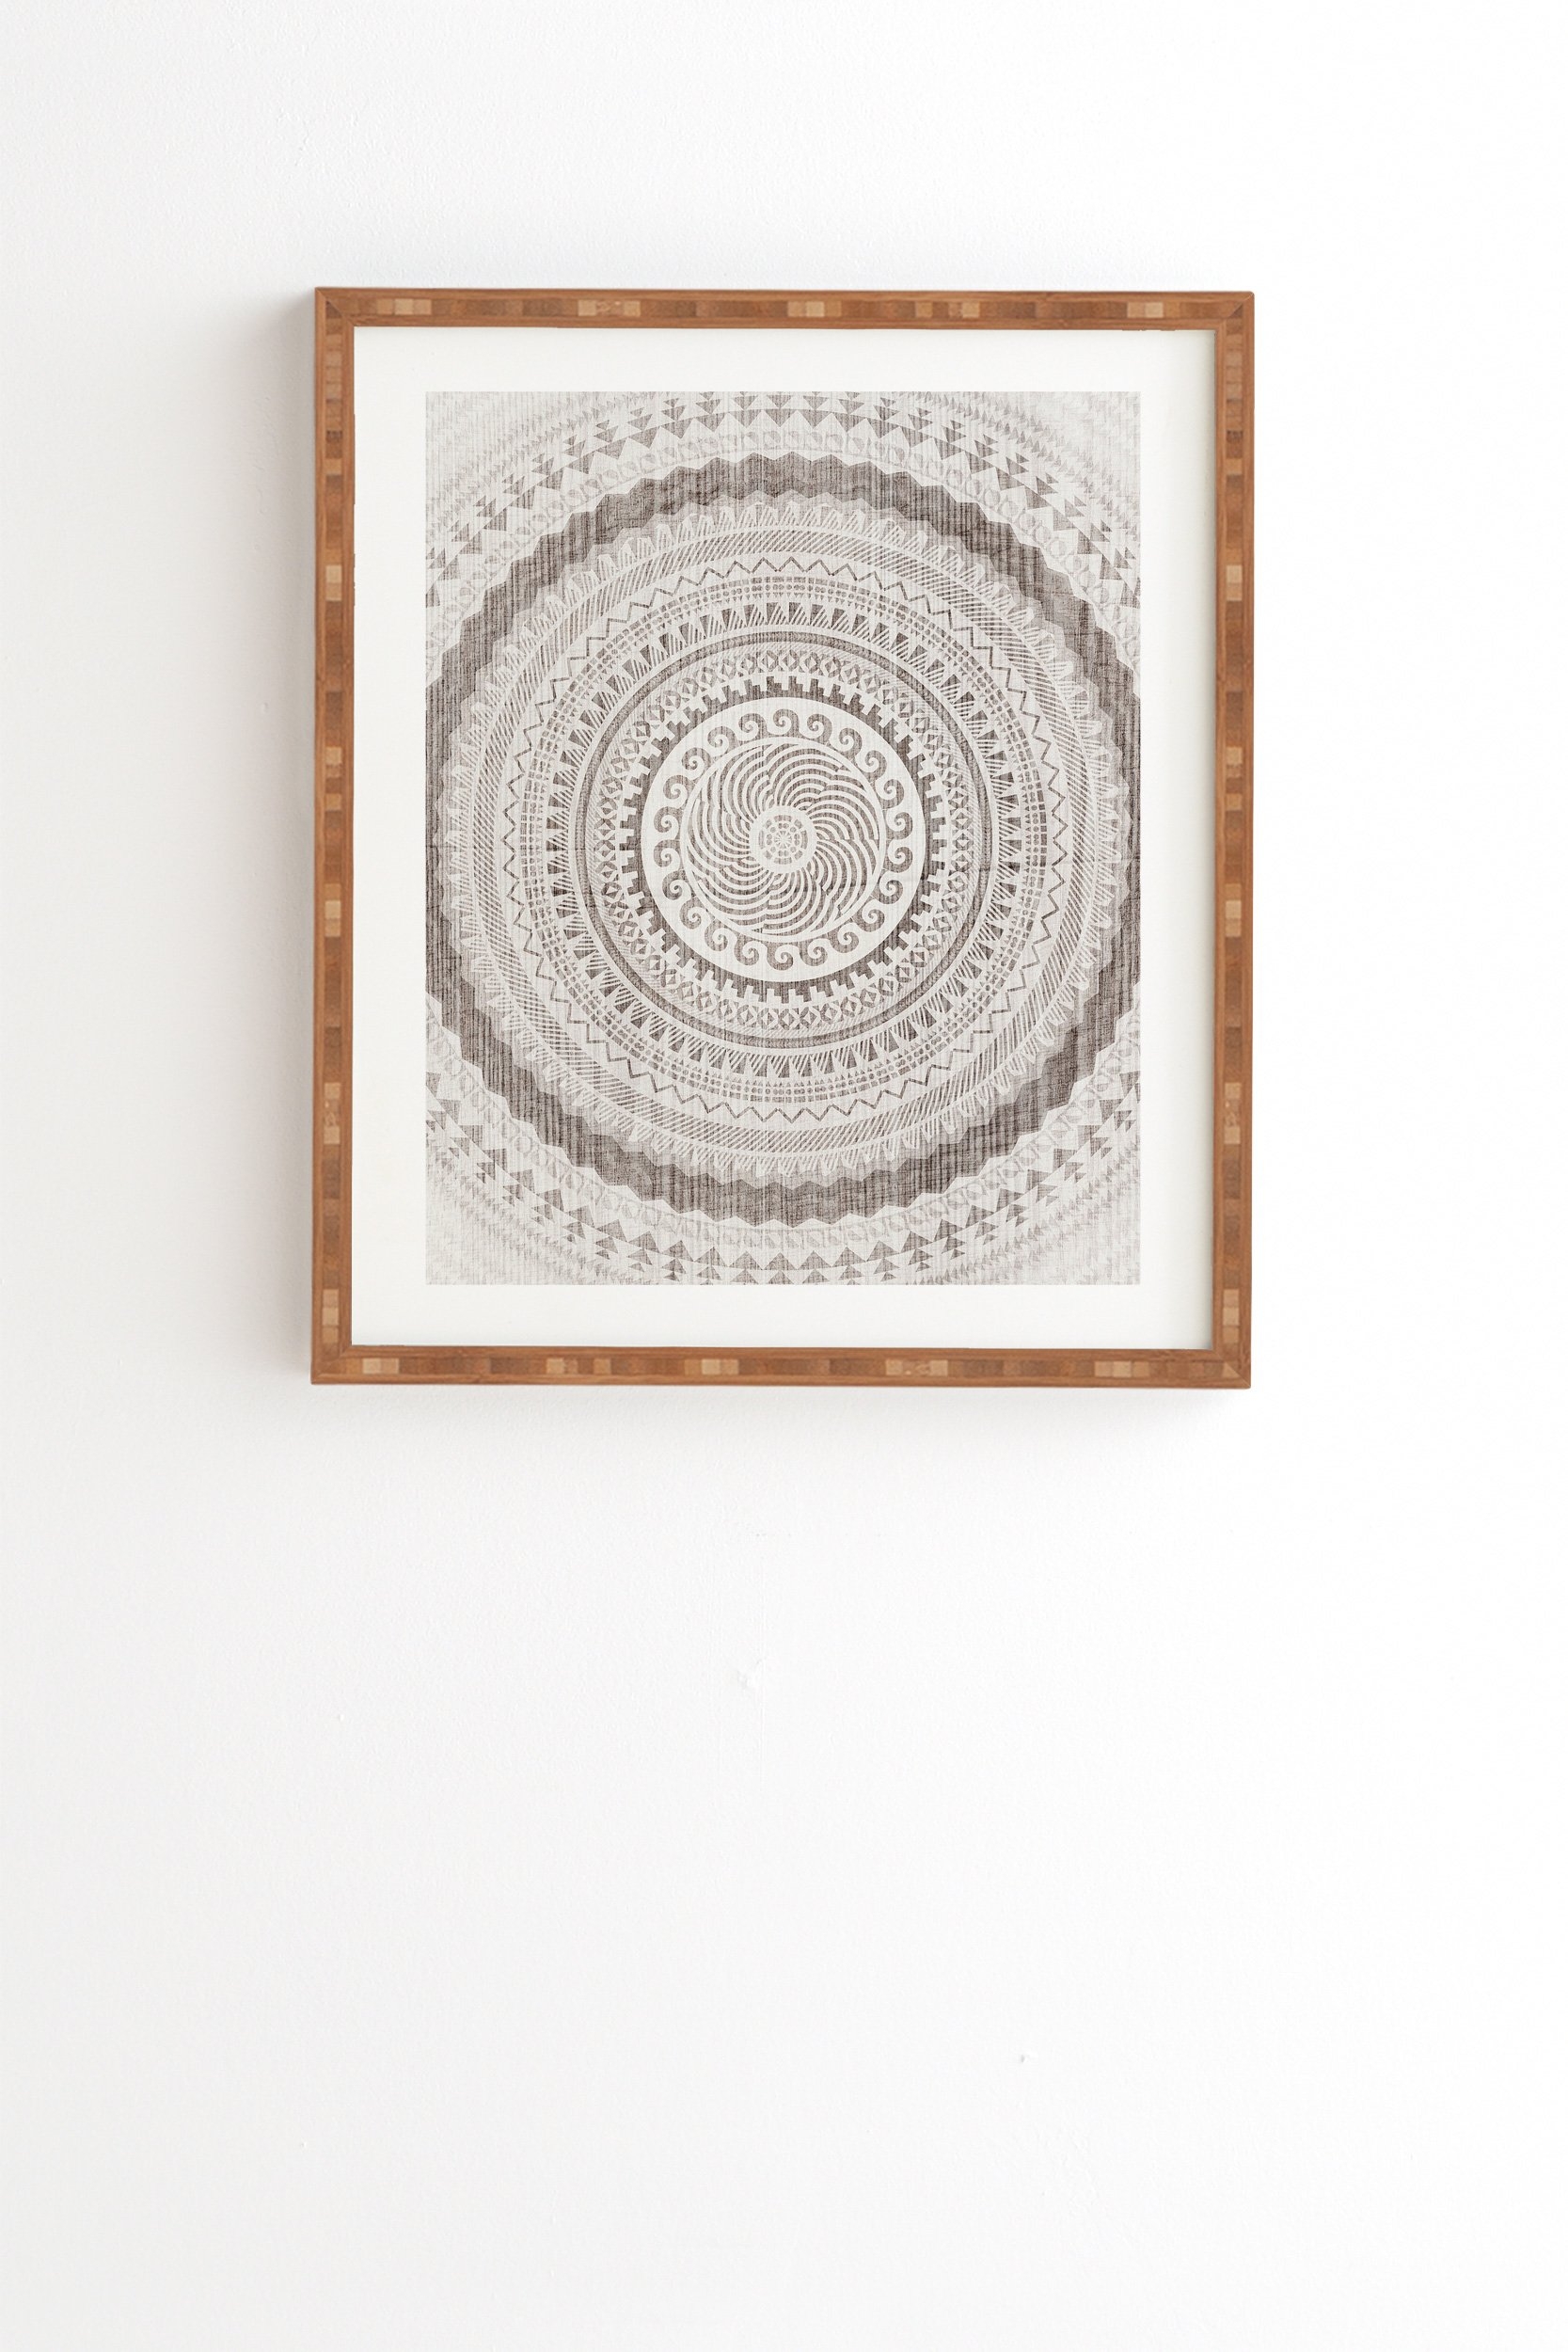 Iveta Abolina Winter Wheat Framed Wall Art - 30" x 30" - Image 1